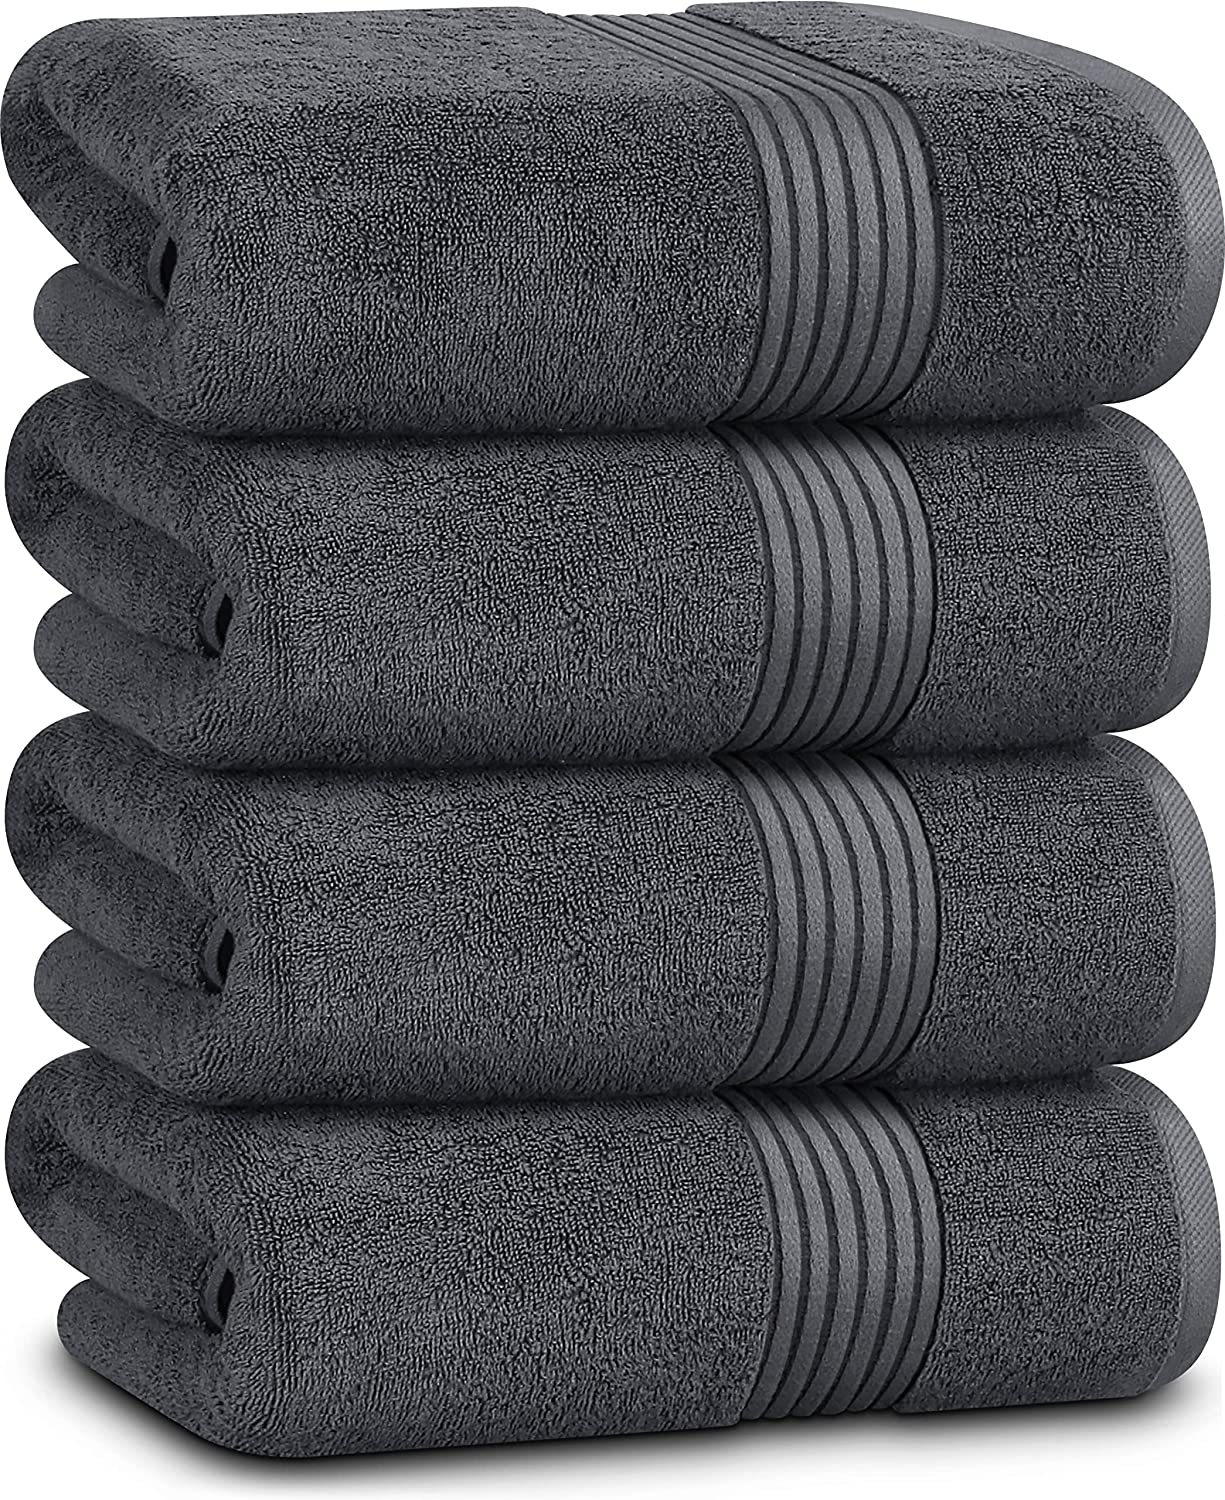 Utopia Towels Machine Washable Cotton Bath Towels, Set Of 4